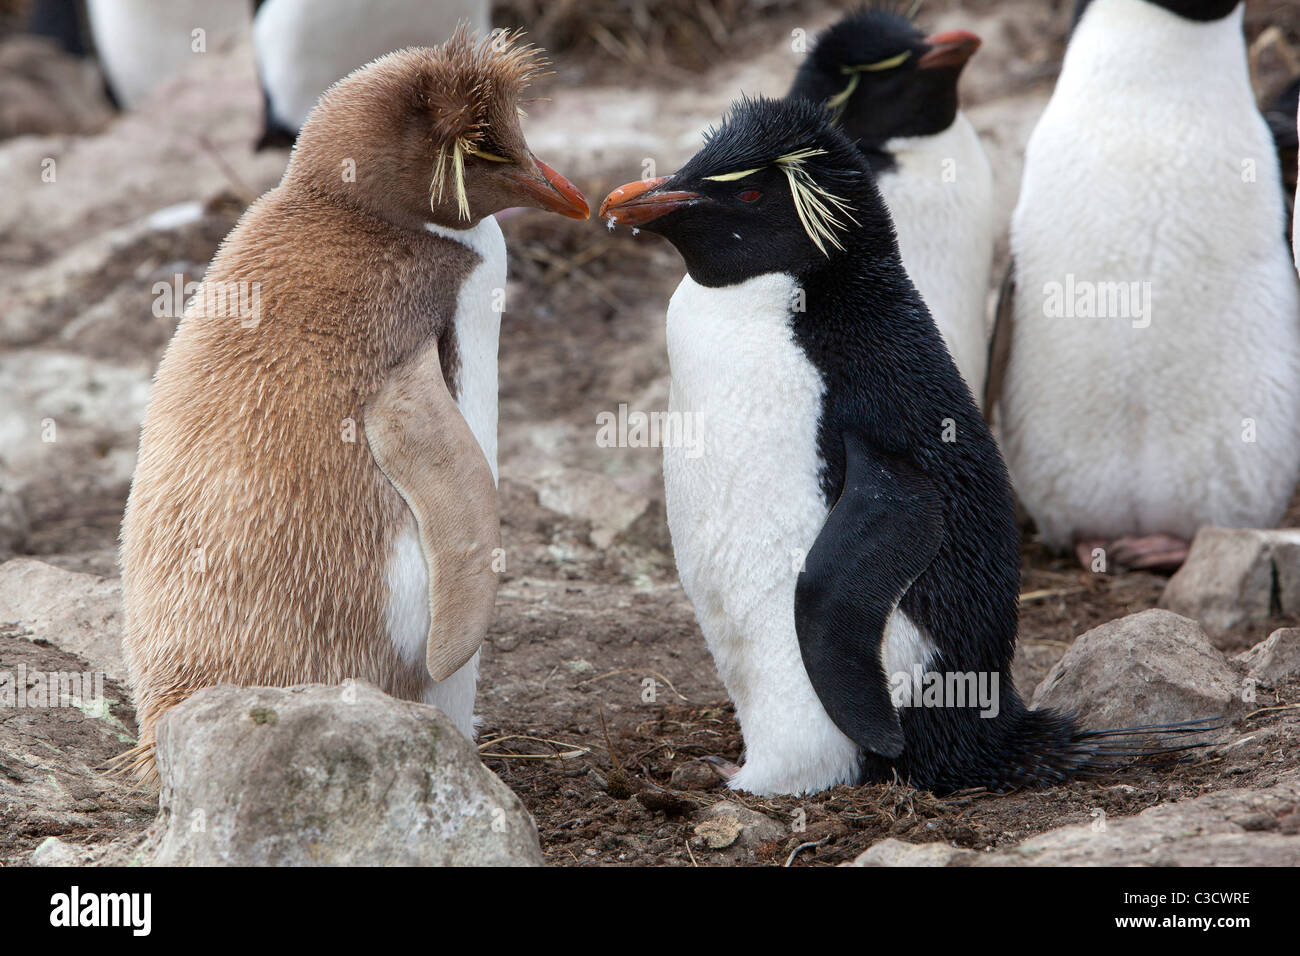 Leucistic Rockhopper Penguin (Eudyptes chrysocome chrysocome) debout à côté d'une personne en couleurs normales. Banque D'Images